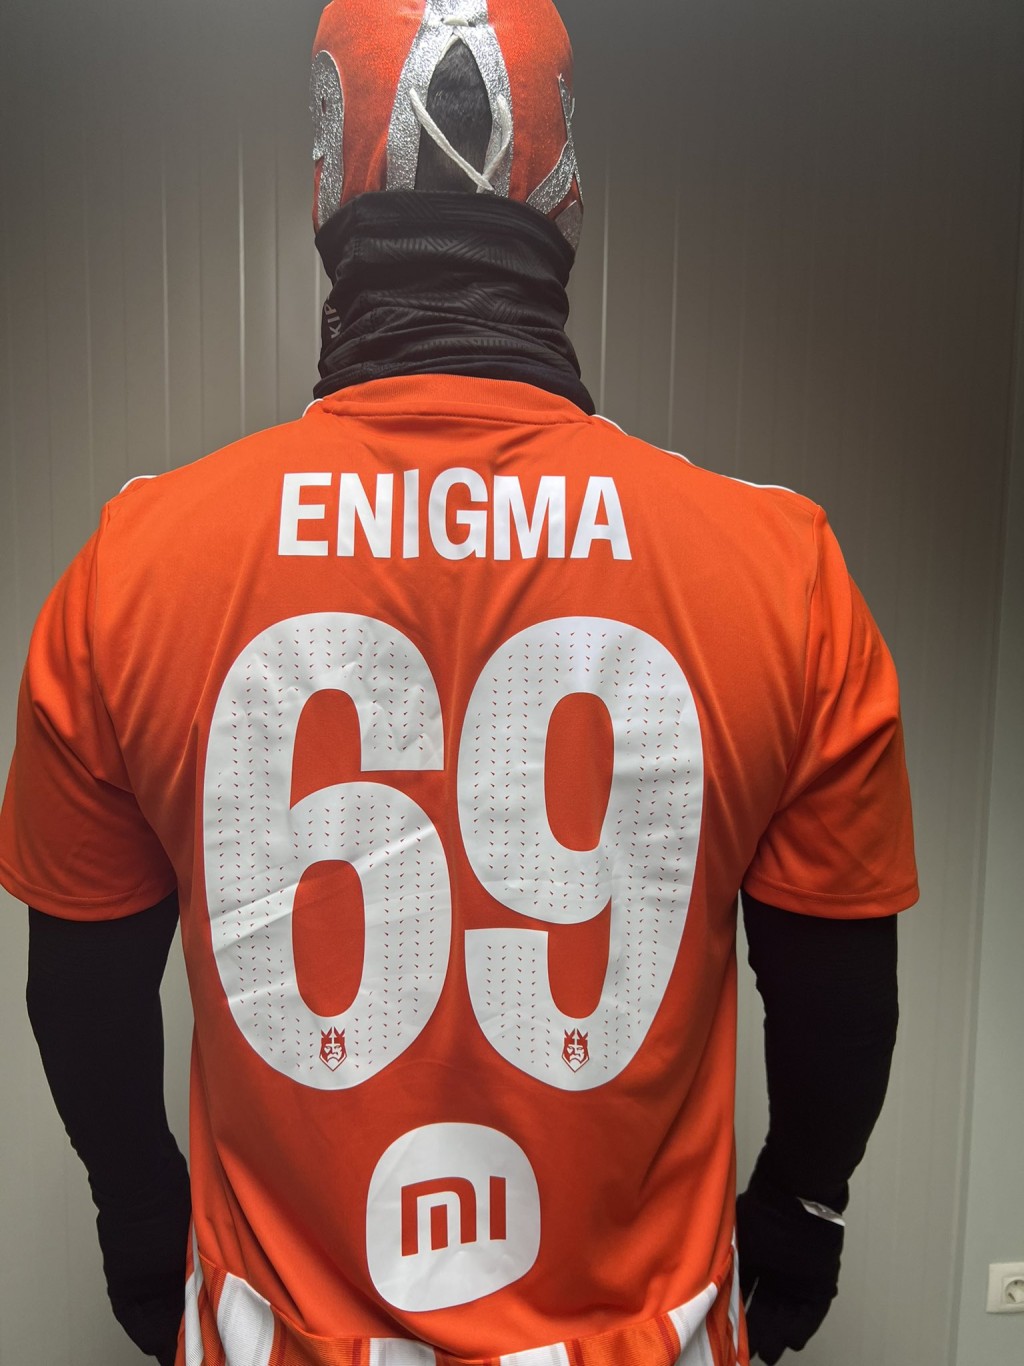 Enigma69是一名三十岁以下的现役西甲球员。网上图片